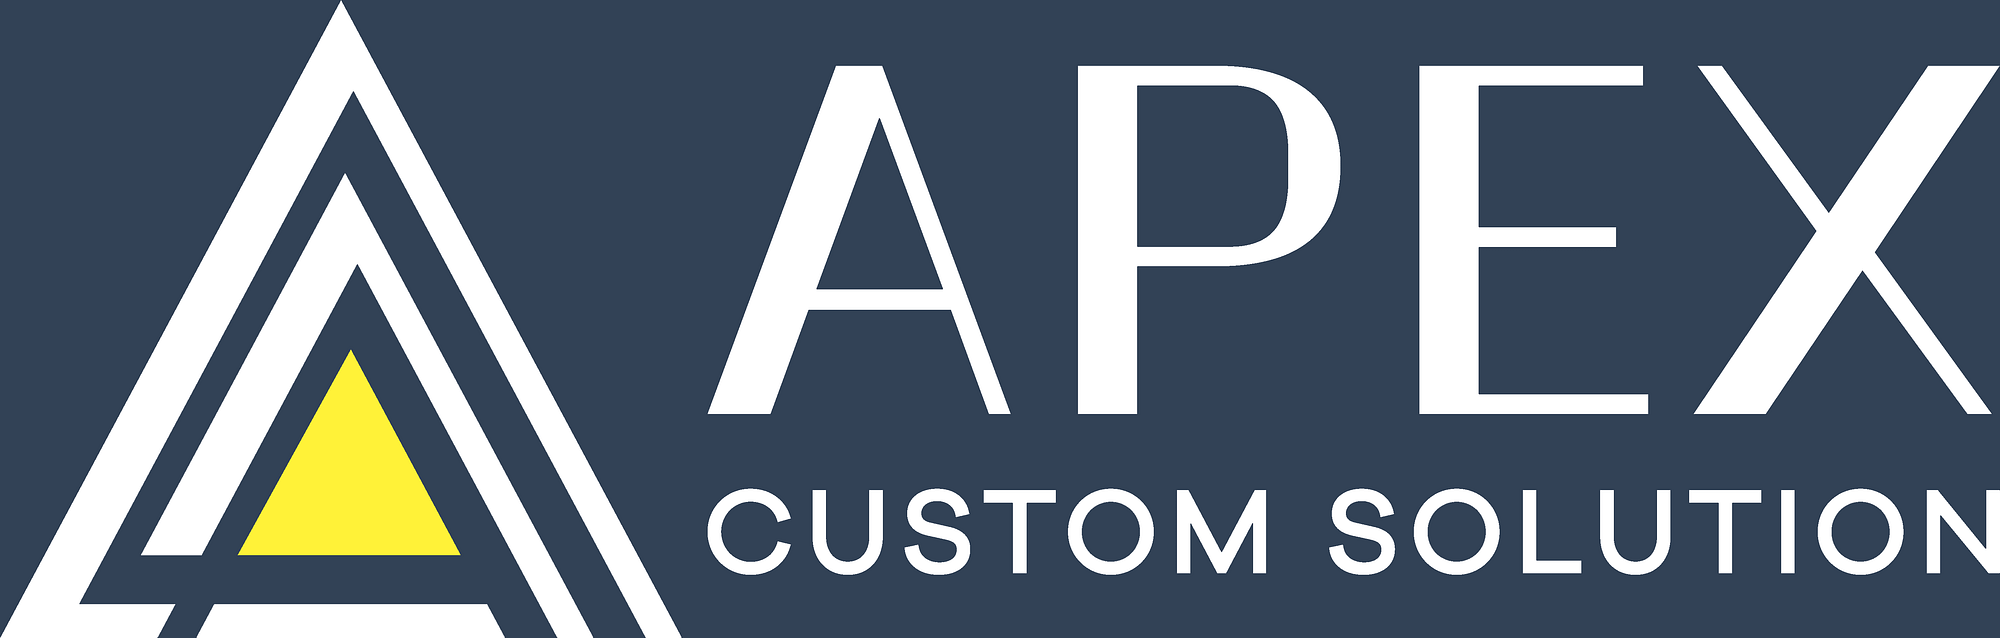 APEX Custom Solution